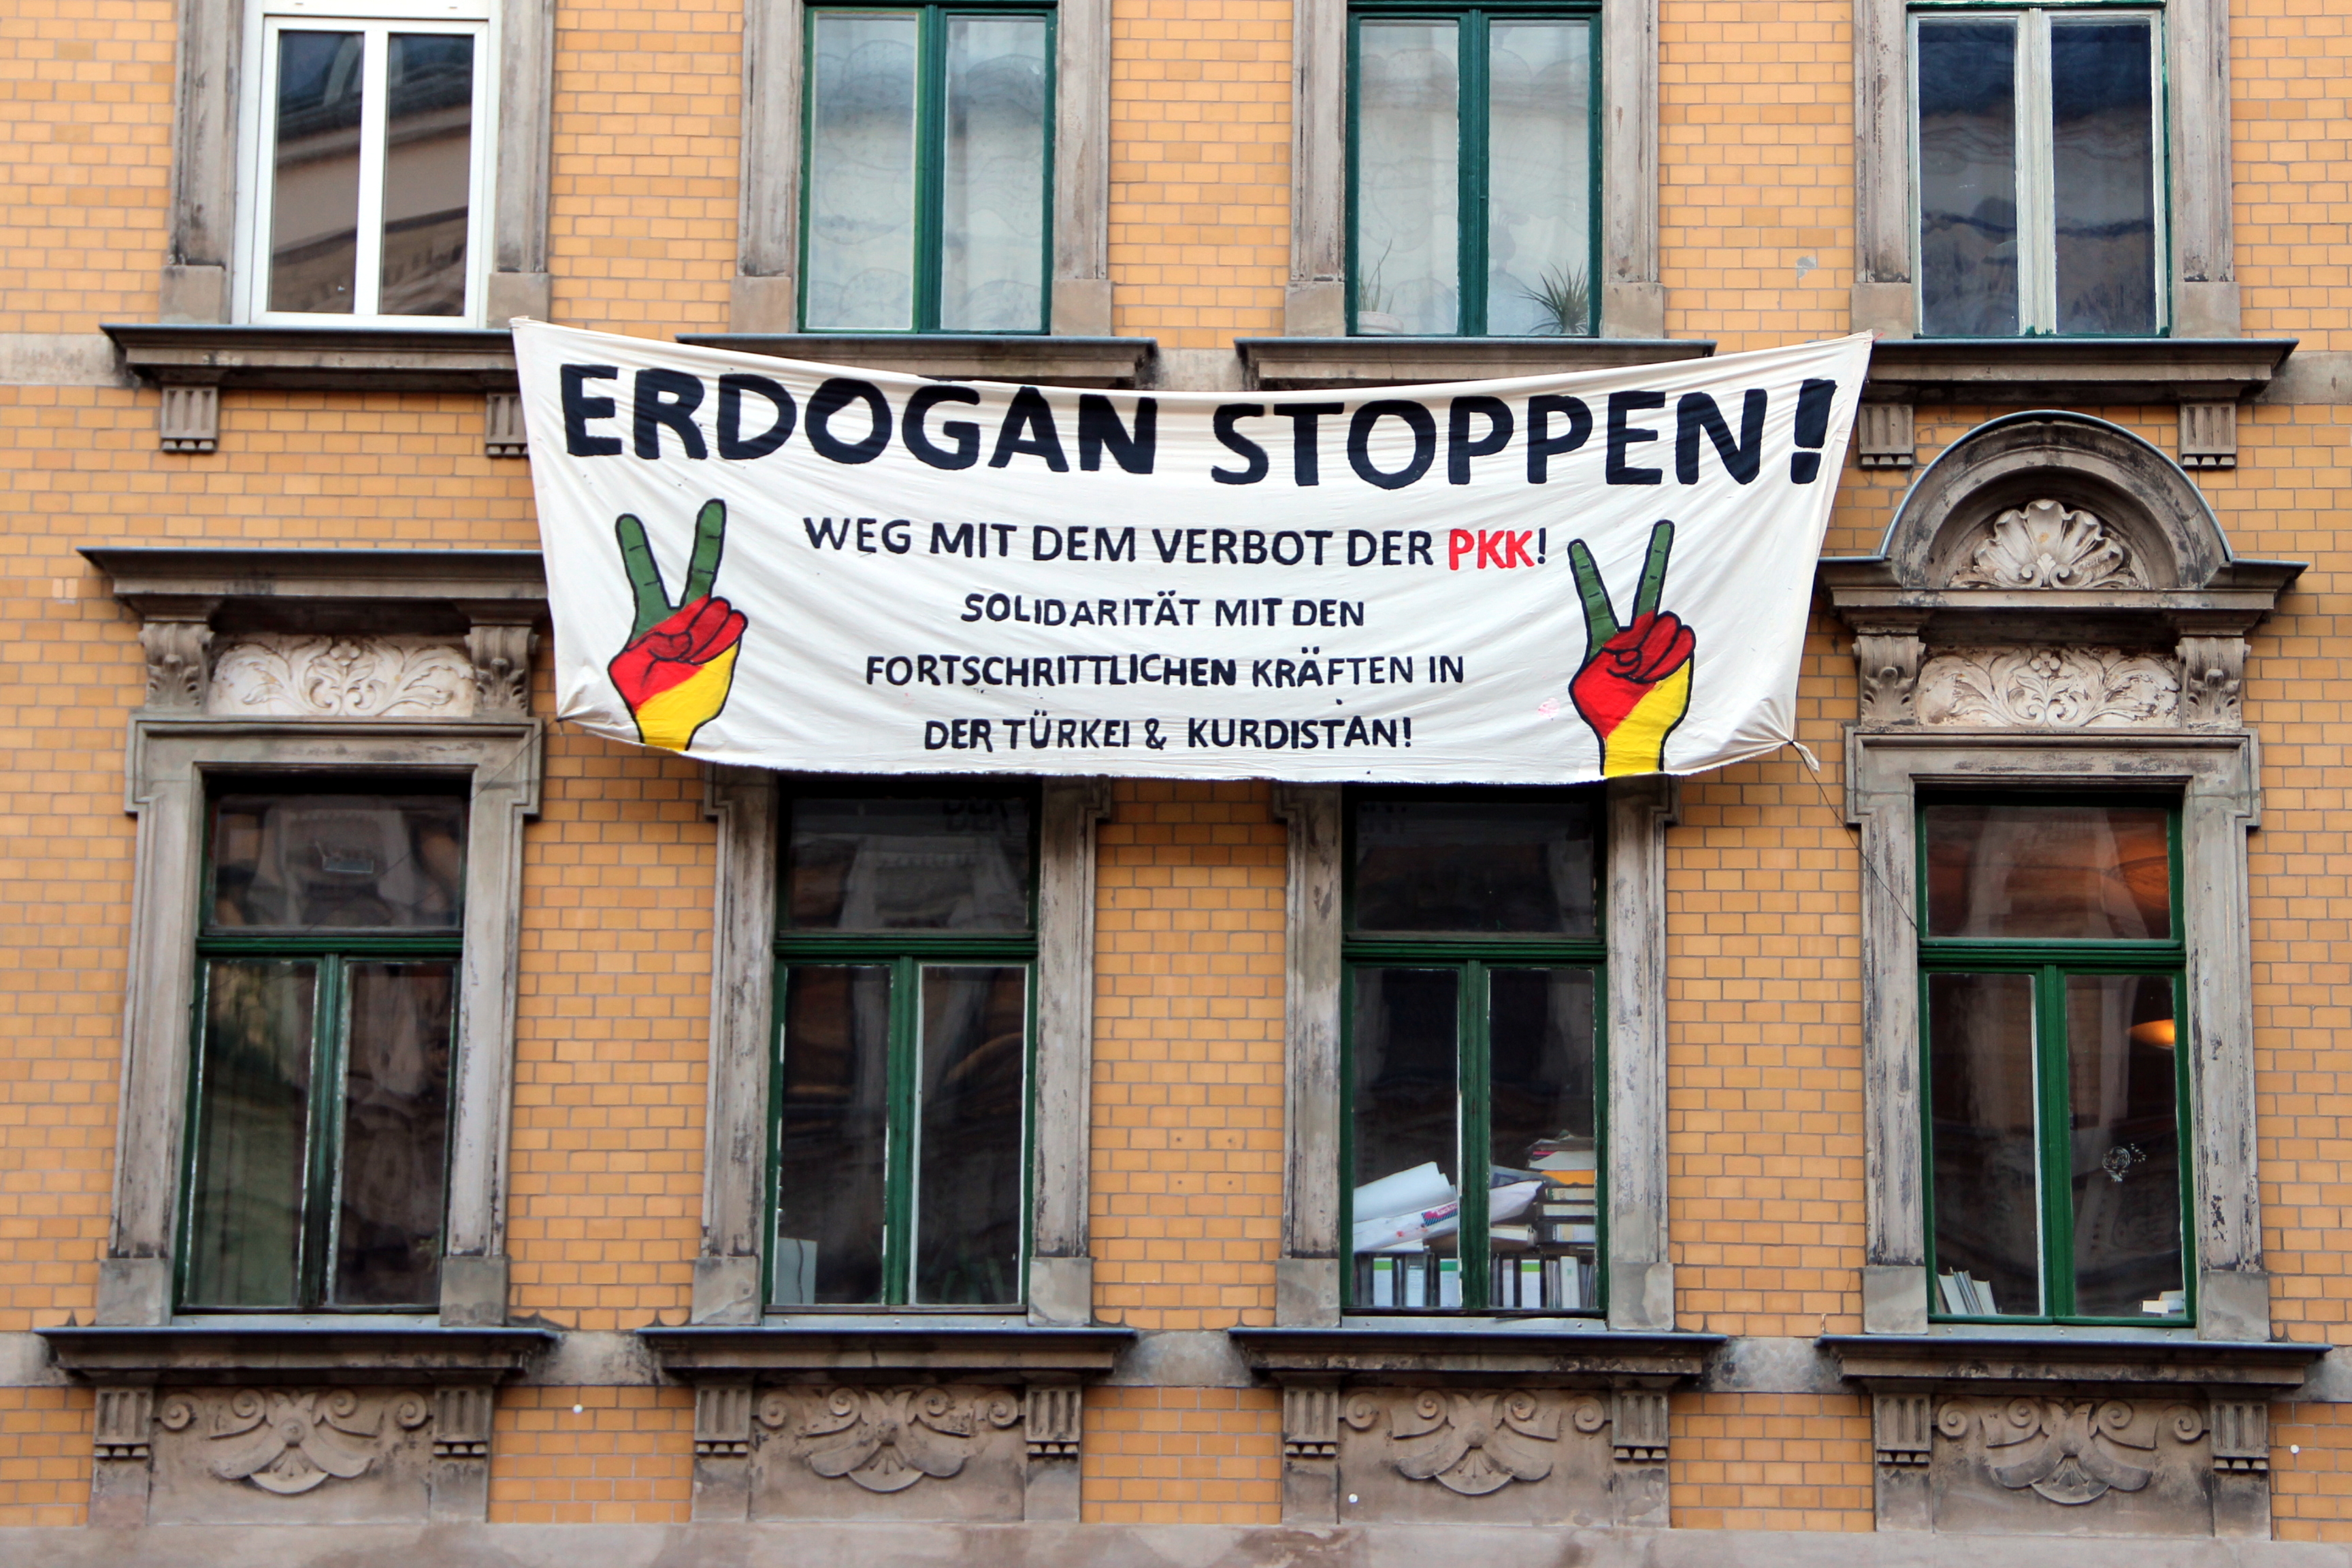 Pro-PKK poster in Duitsland, 2016. Bron: Flickr / strassenstriche.net